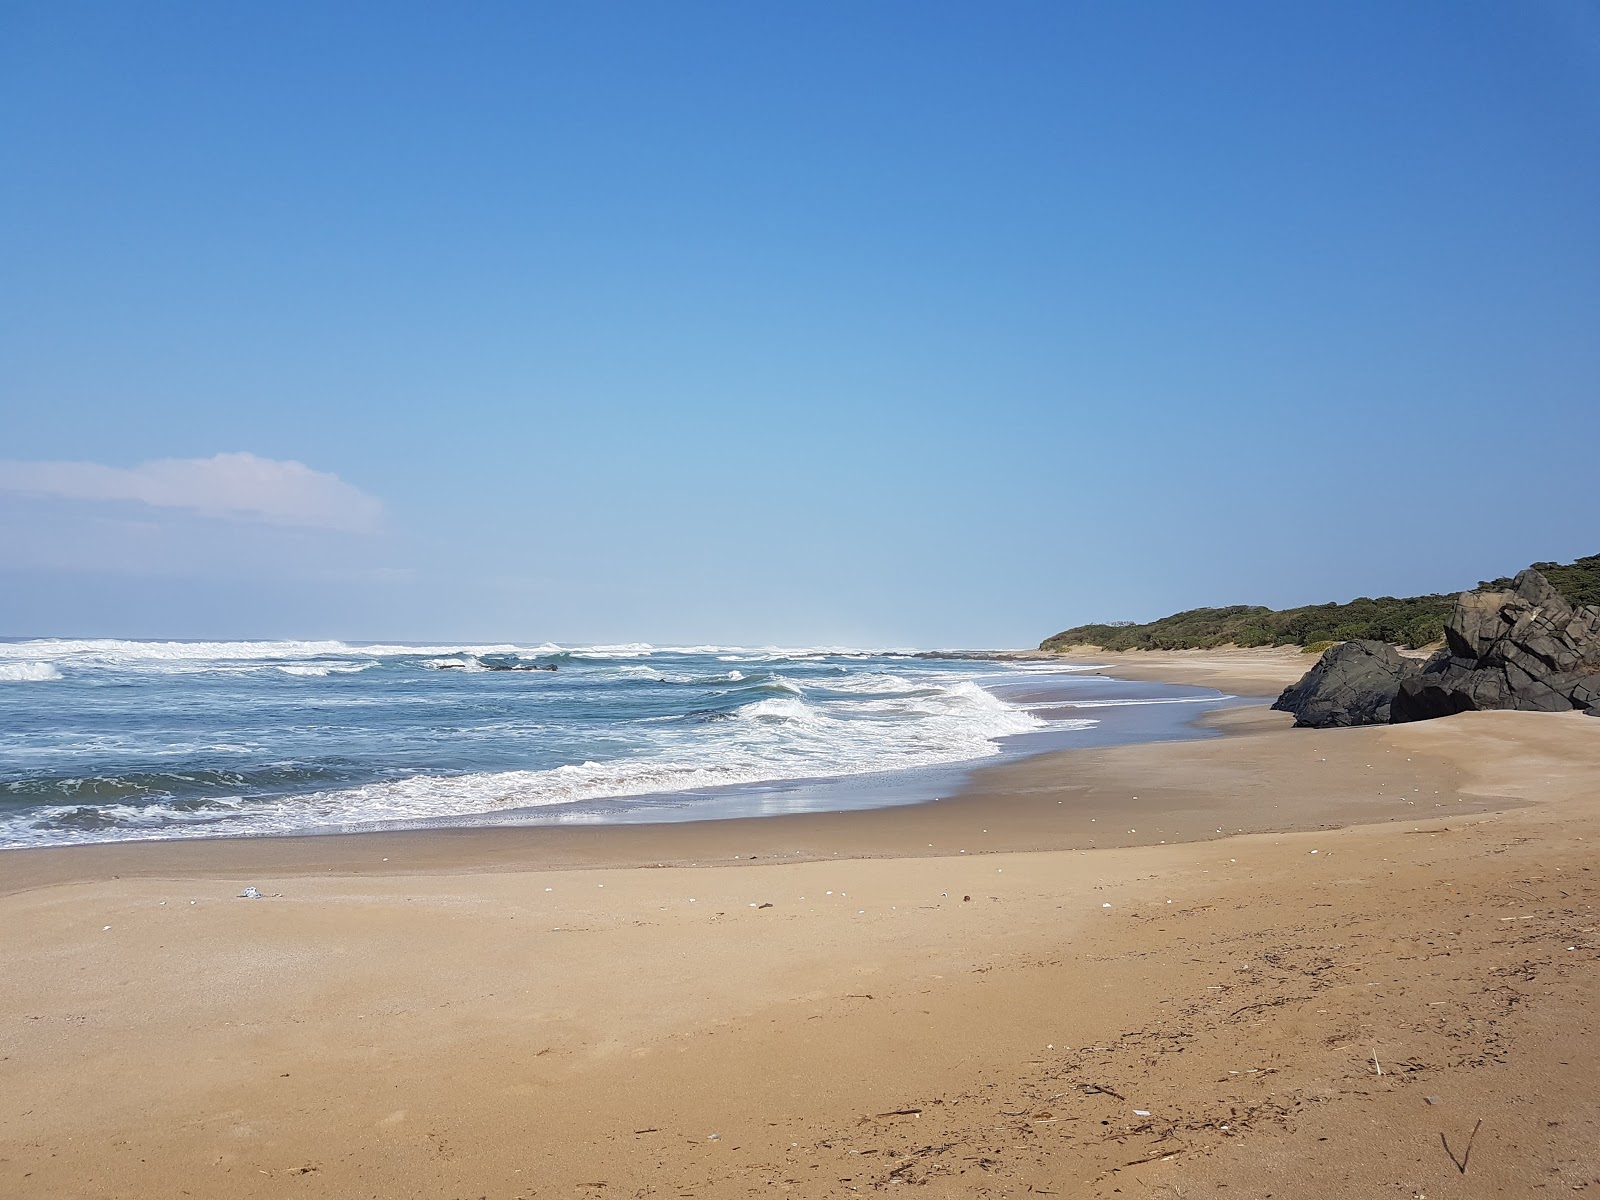 Xhora beach'in fotoğrafı parlak ince kum yüzey ile